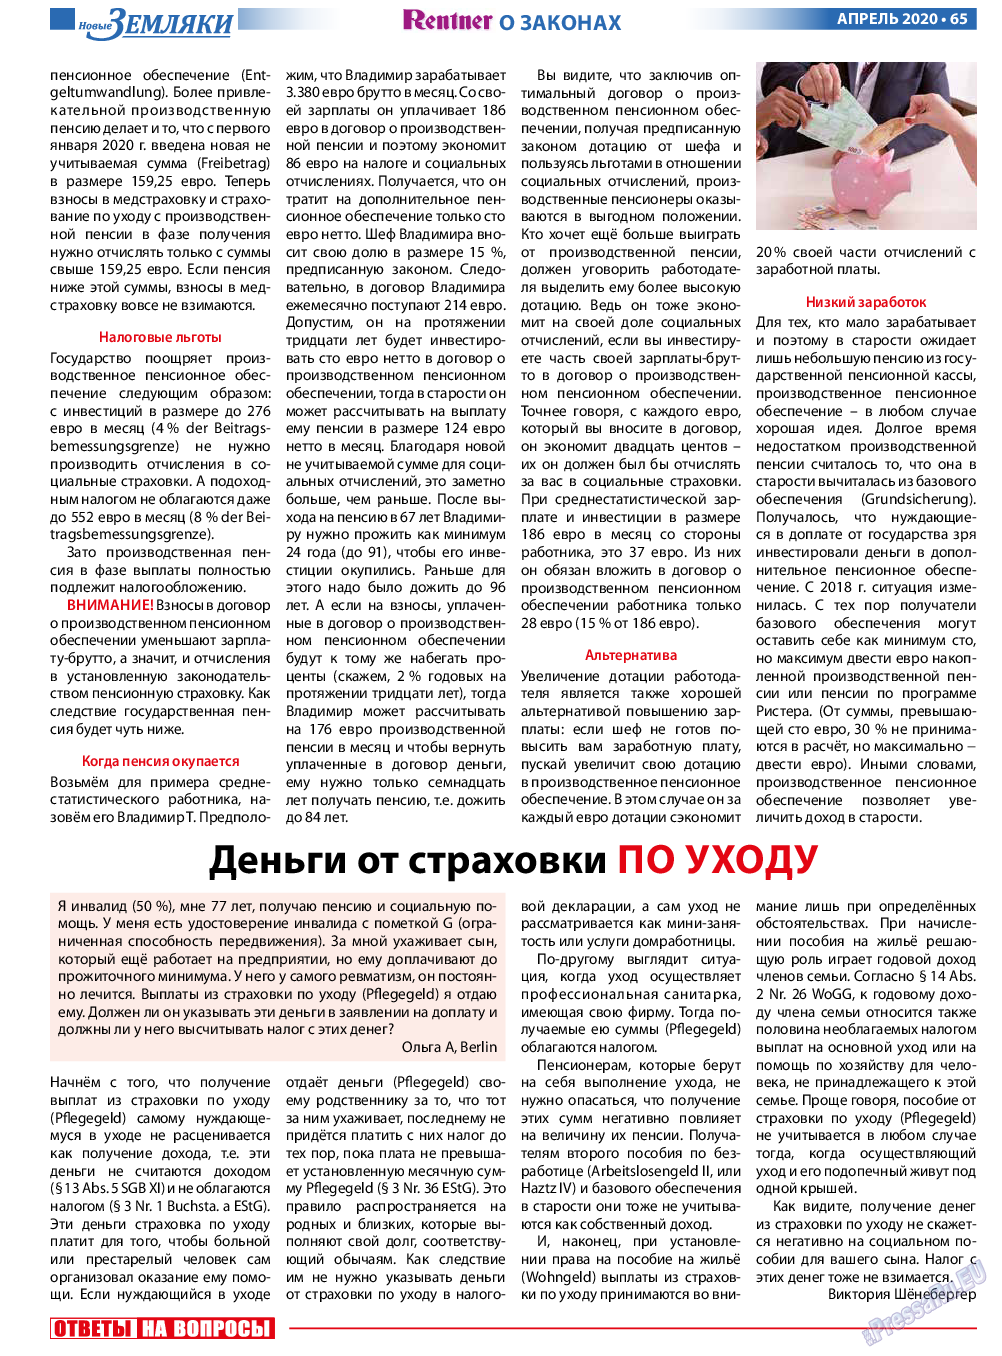 Новые Земляки, газета. 2020 №4 стр.65